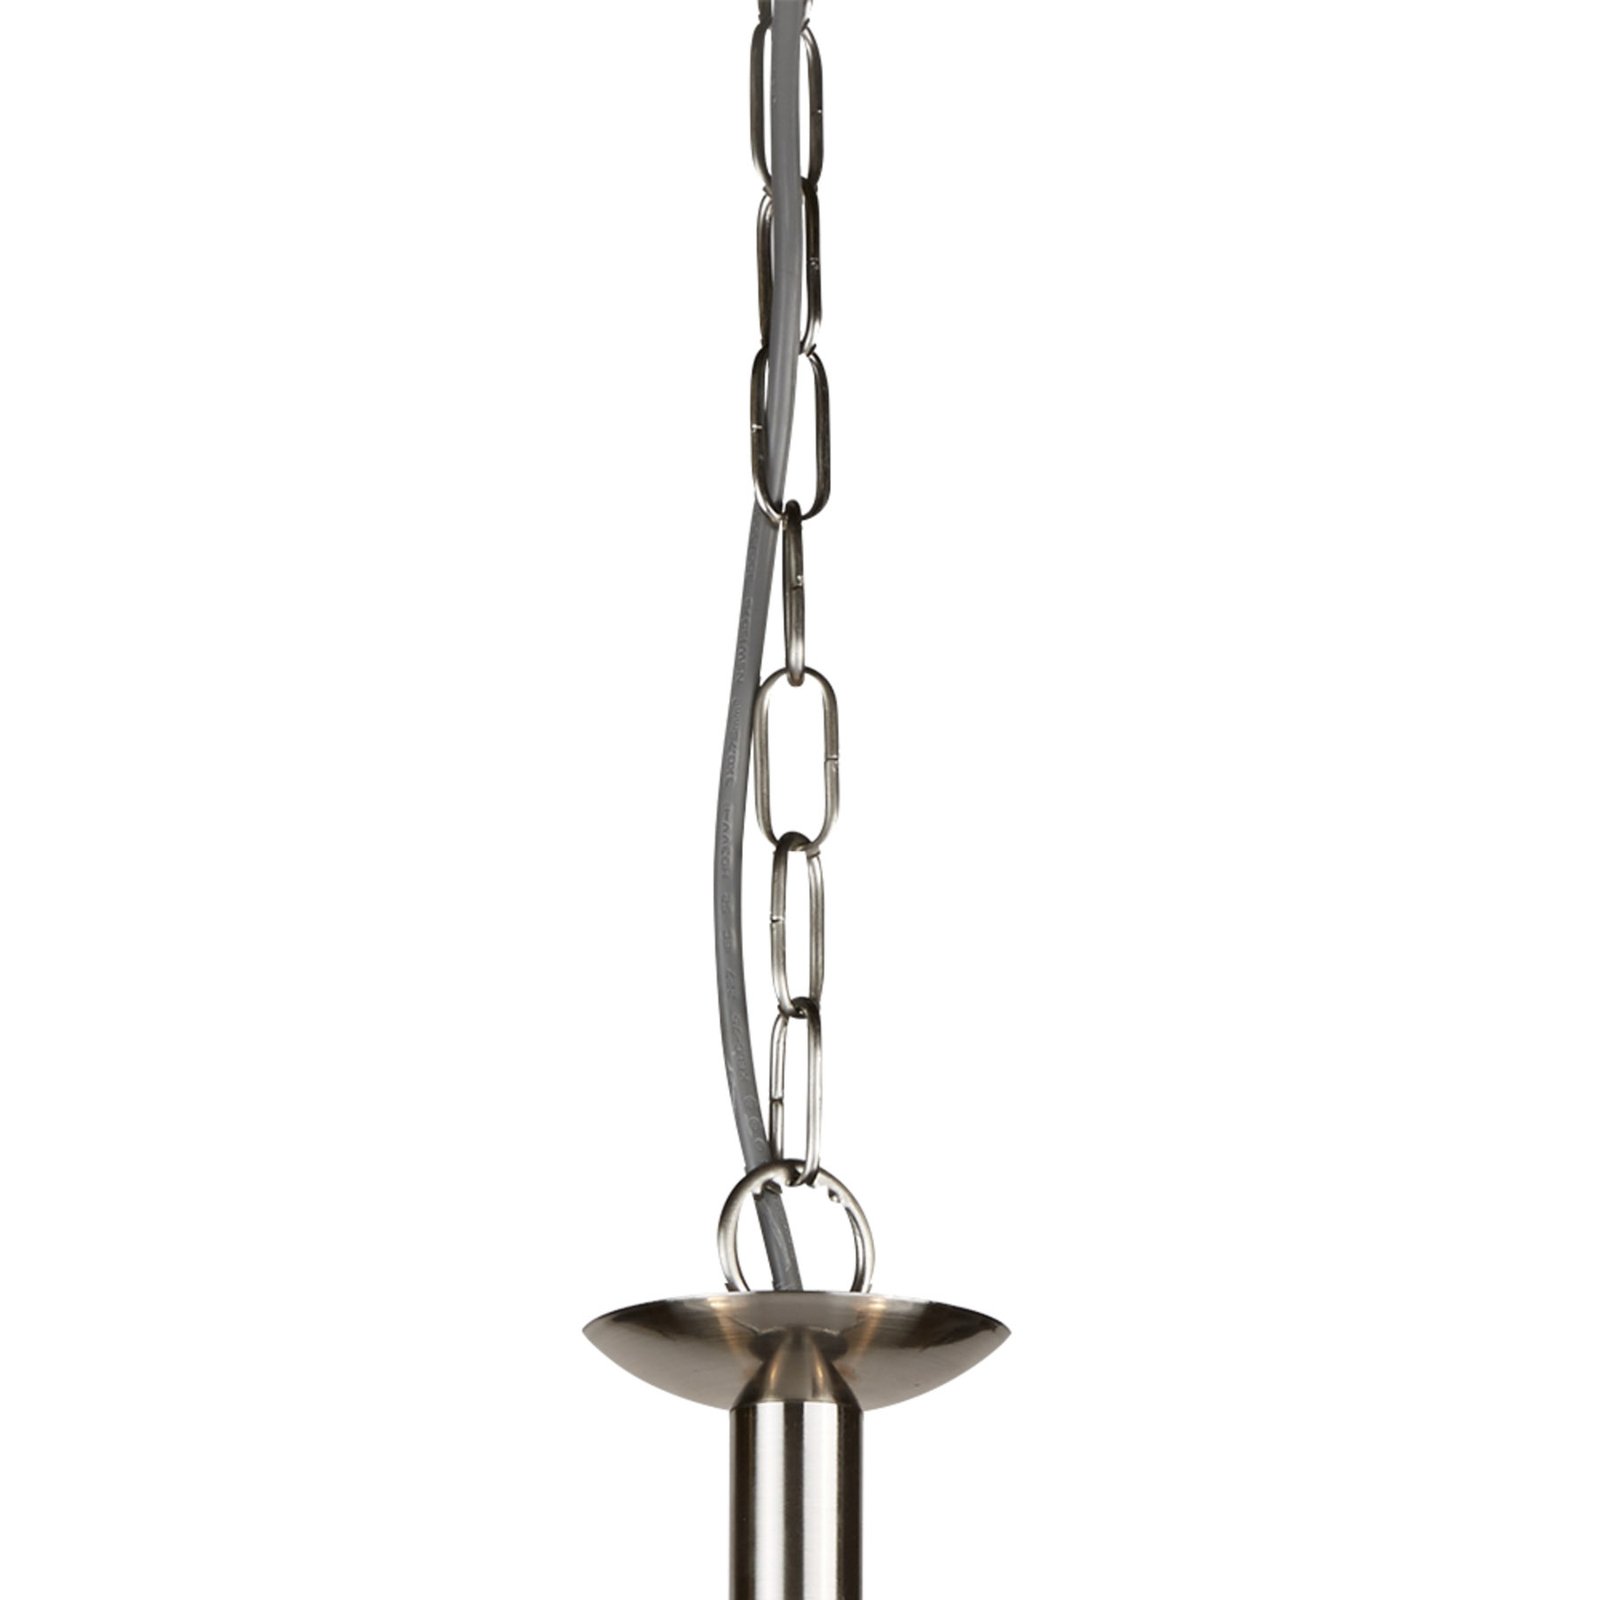 Hanglamp Bistro II 3-lamps zilver/ribbelglas